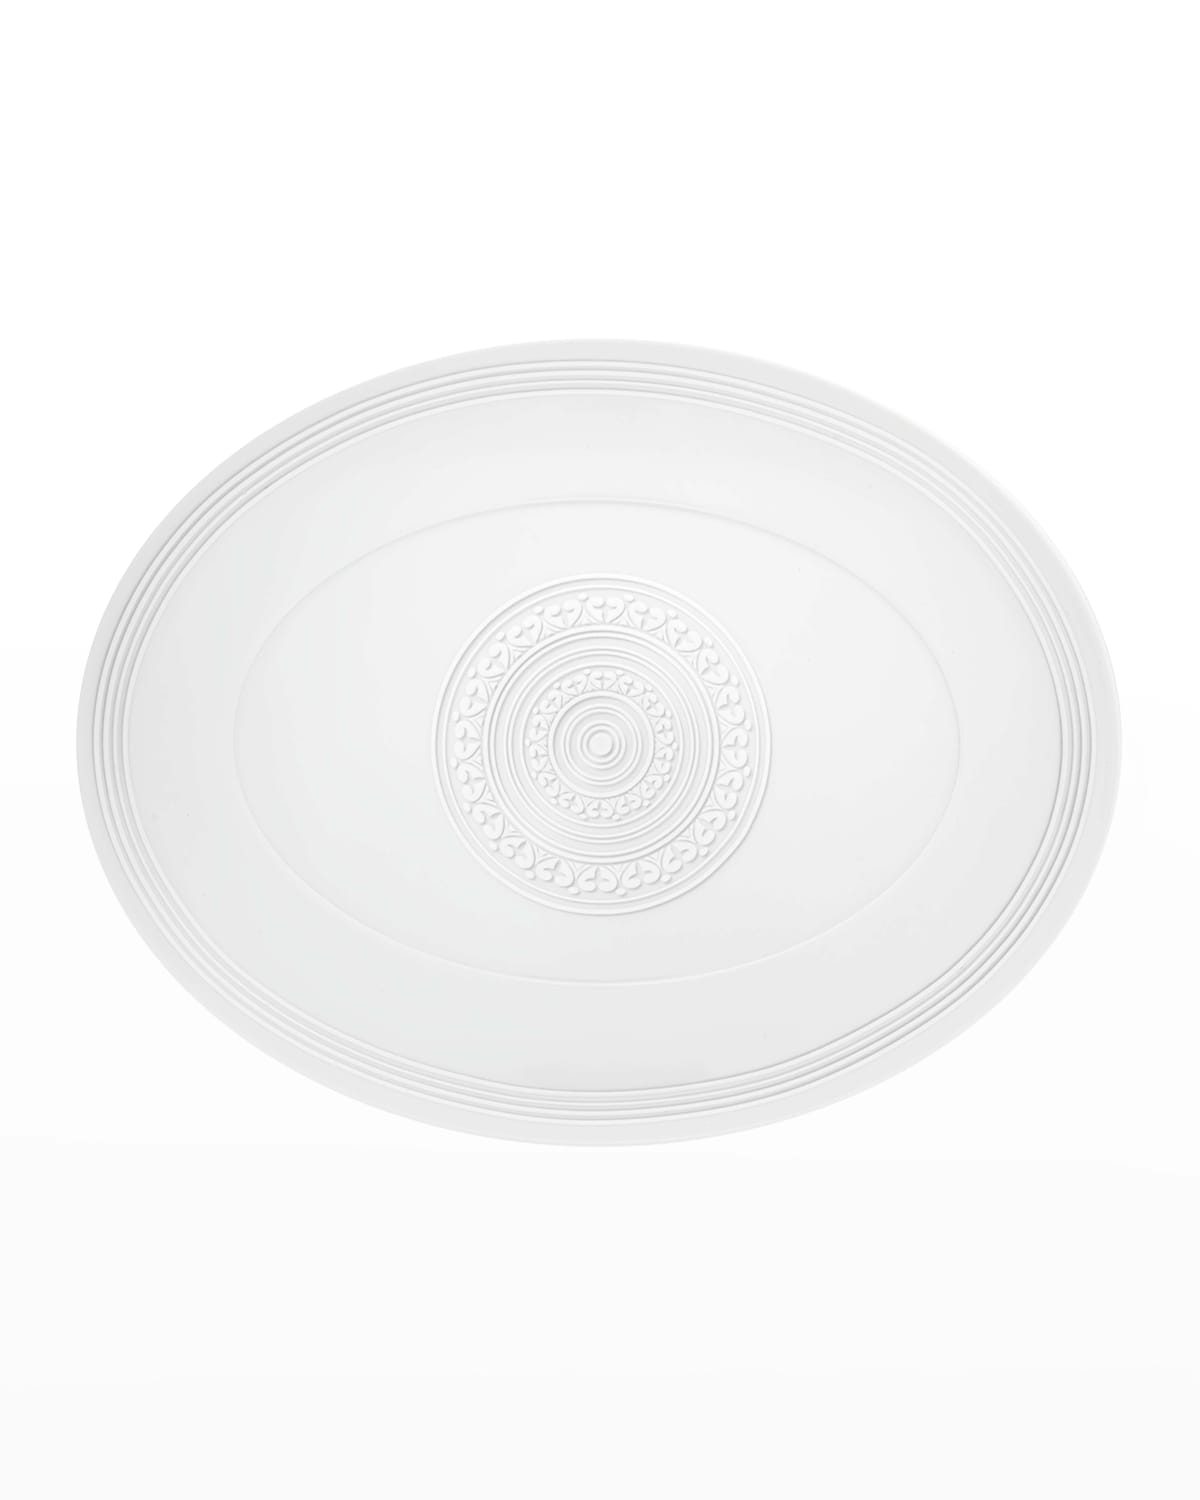 Vista Alegre Ornament Small Oval Platter In White